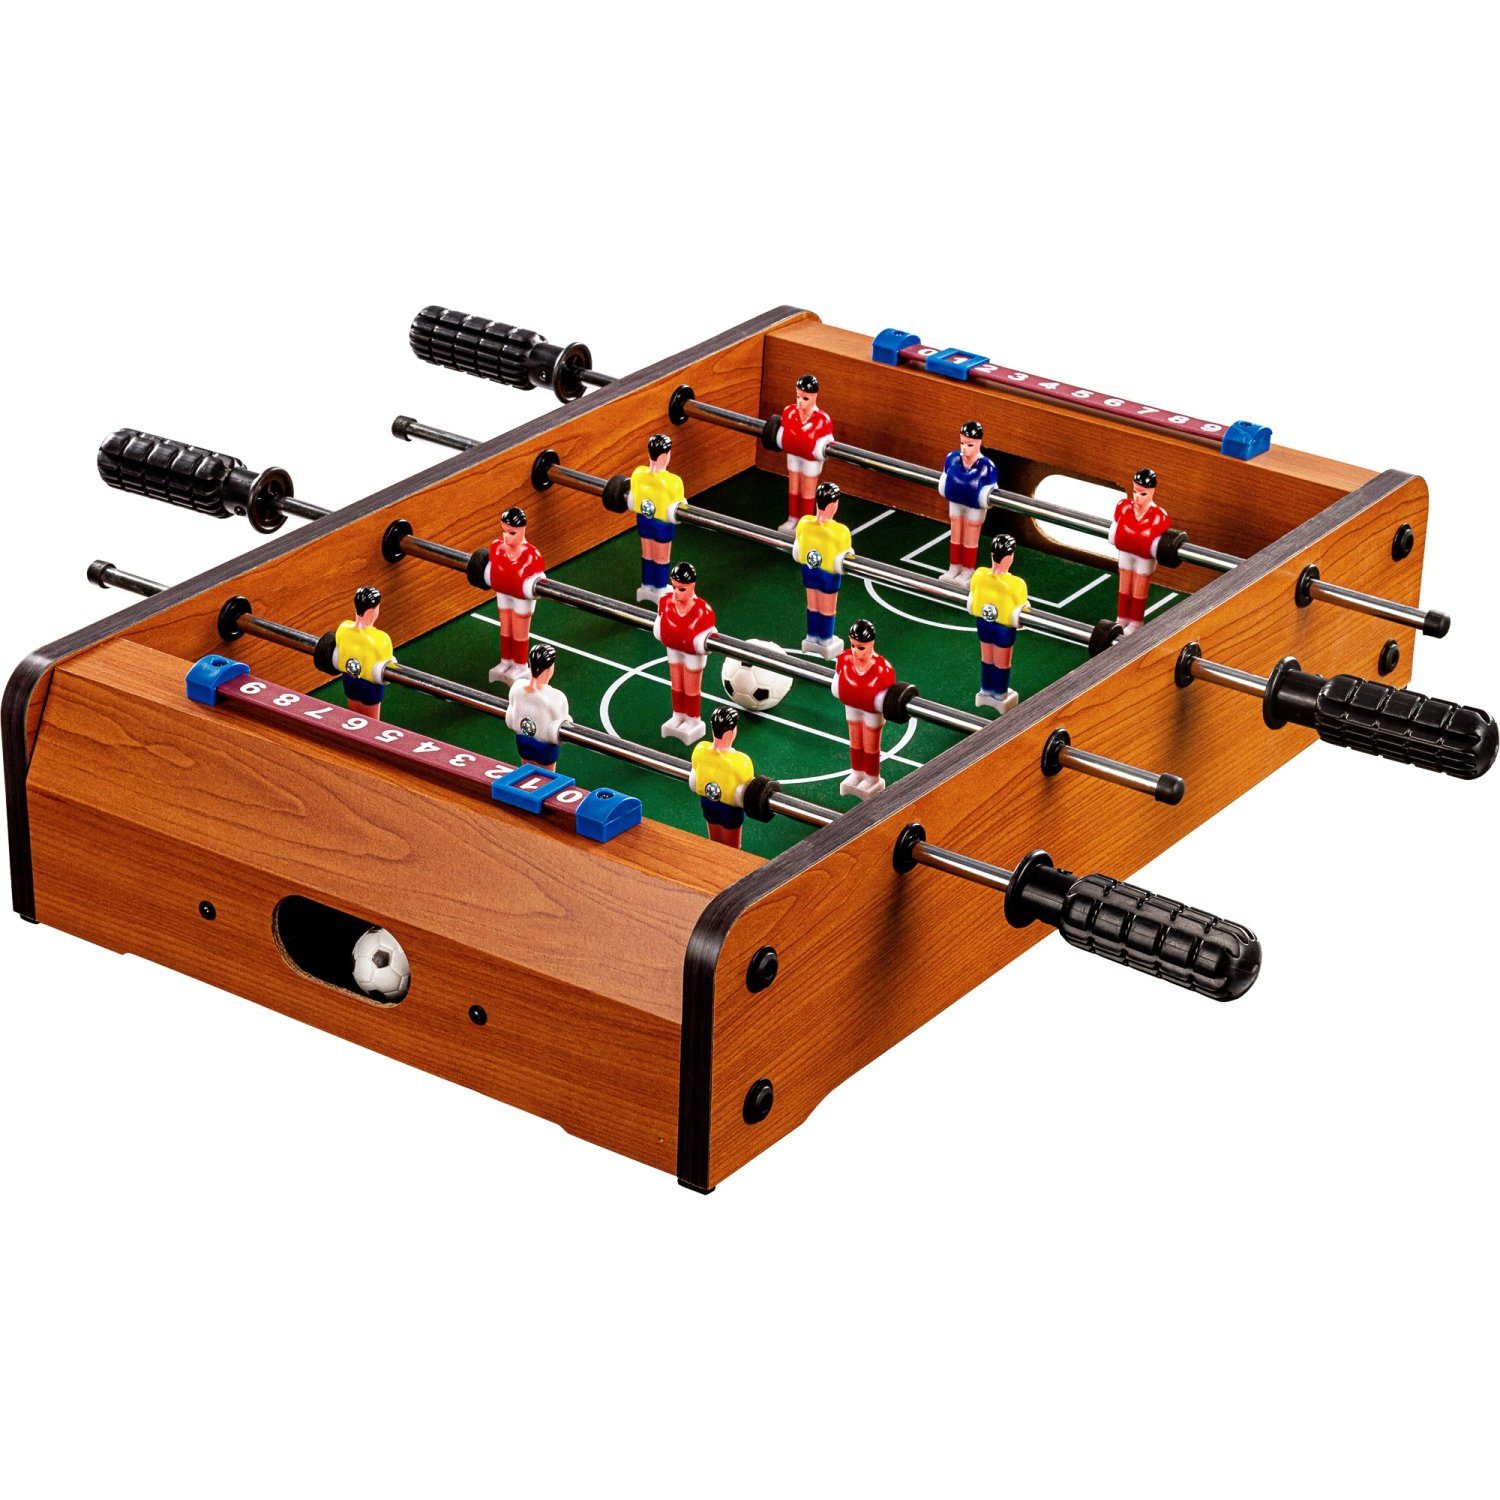 GAMES PLANET Mini-Tischkicker Mini Kicker Tischfußball „Dundee“, Tischkicker, Maße: 51x31x8 cm, Gewicht: 2,6 kg, 4 Dekorvarianten